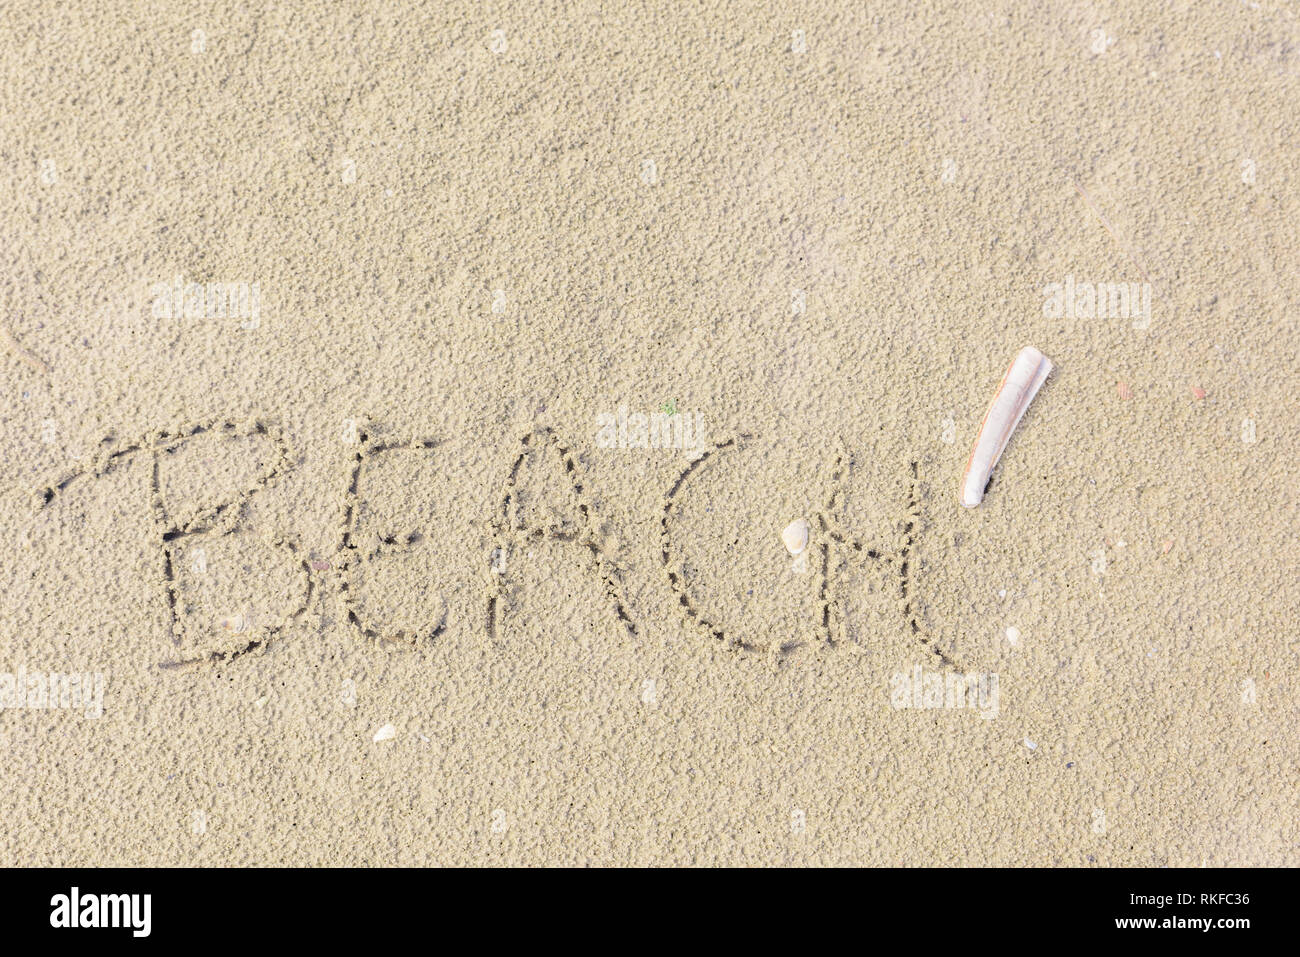 Le mot 'Beach' est écrit dans le sable comme un concept de liberté, de détente et de vacances. Un couteau (Ensis ensis) se trouve à côté du mot dans le sable Banque D'Images